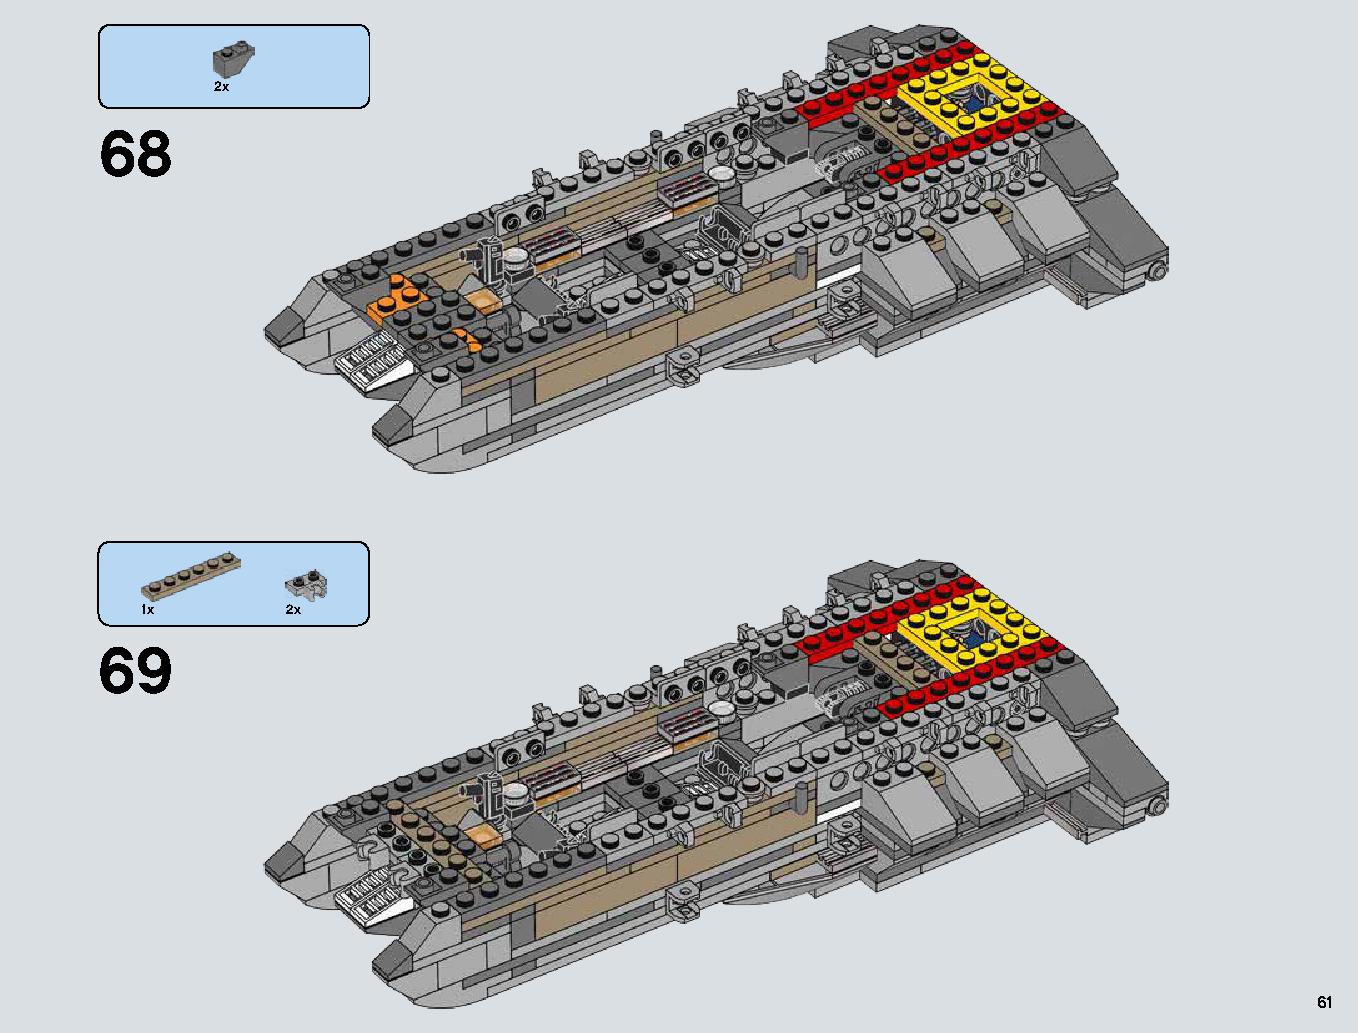 Snowspeeder 75144 レゴの商品情報 レゴの説明書・組立方法 61 page